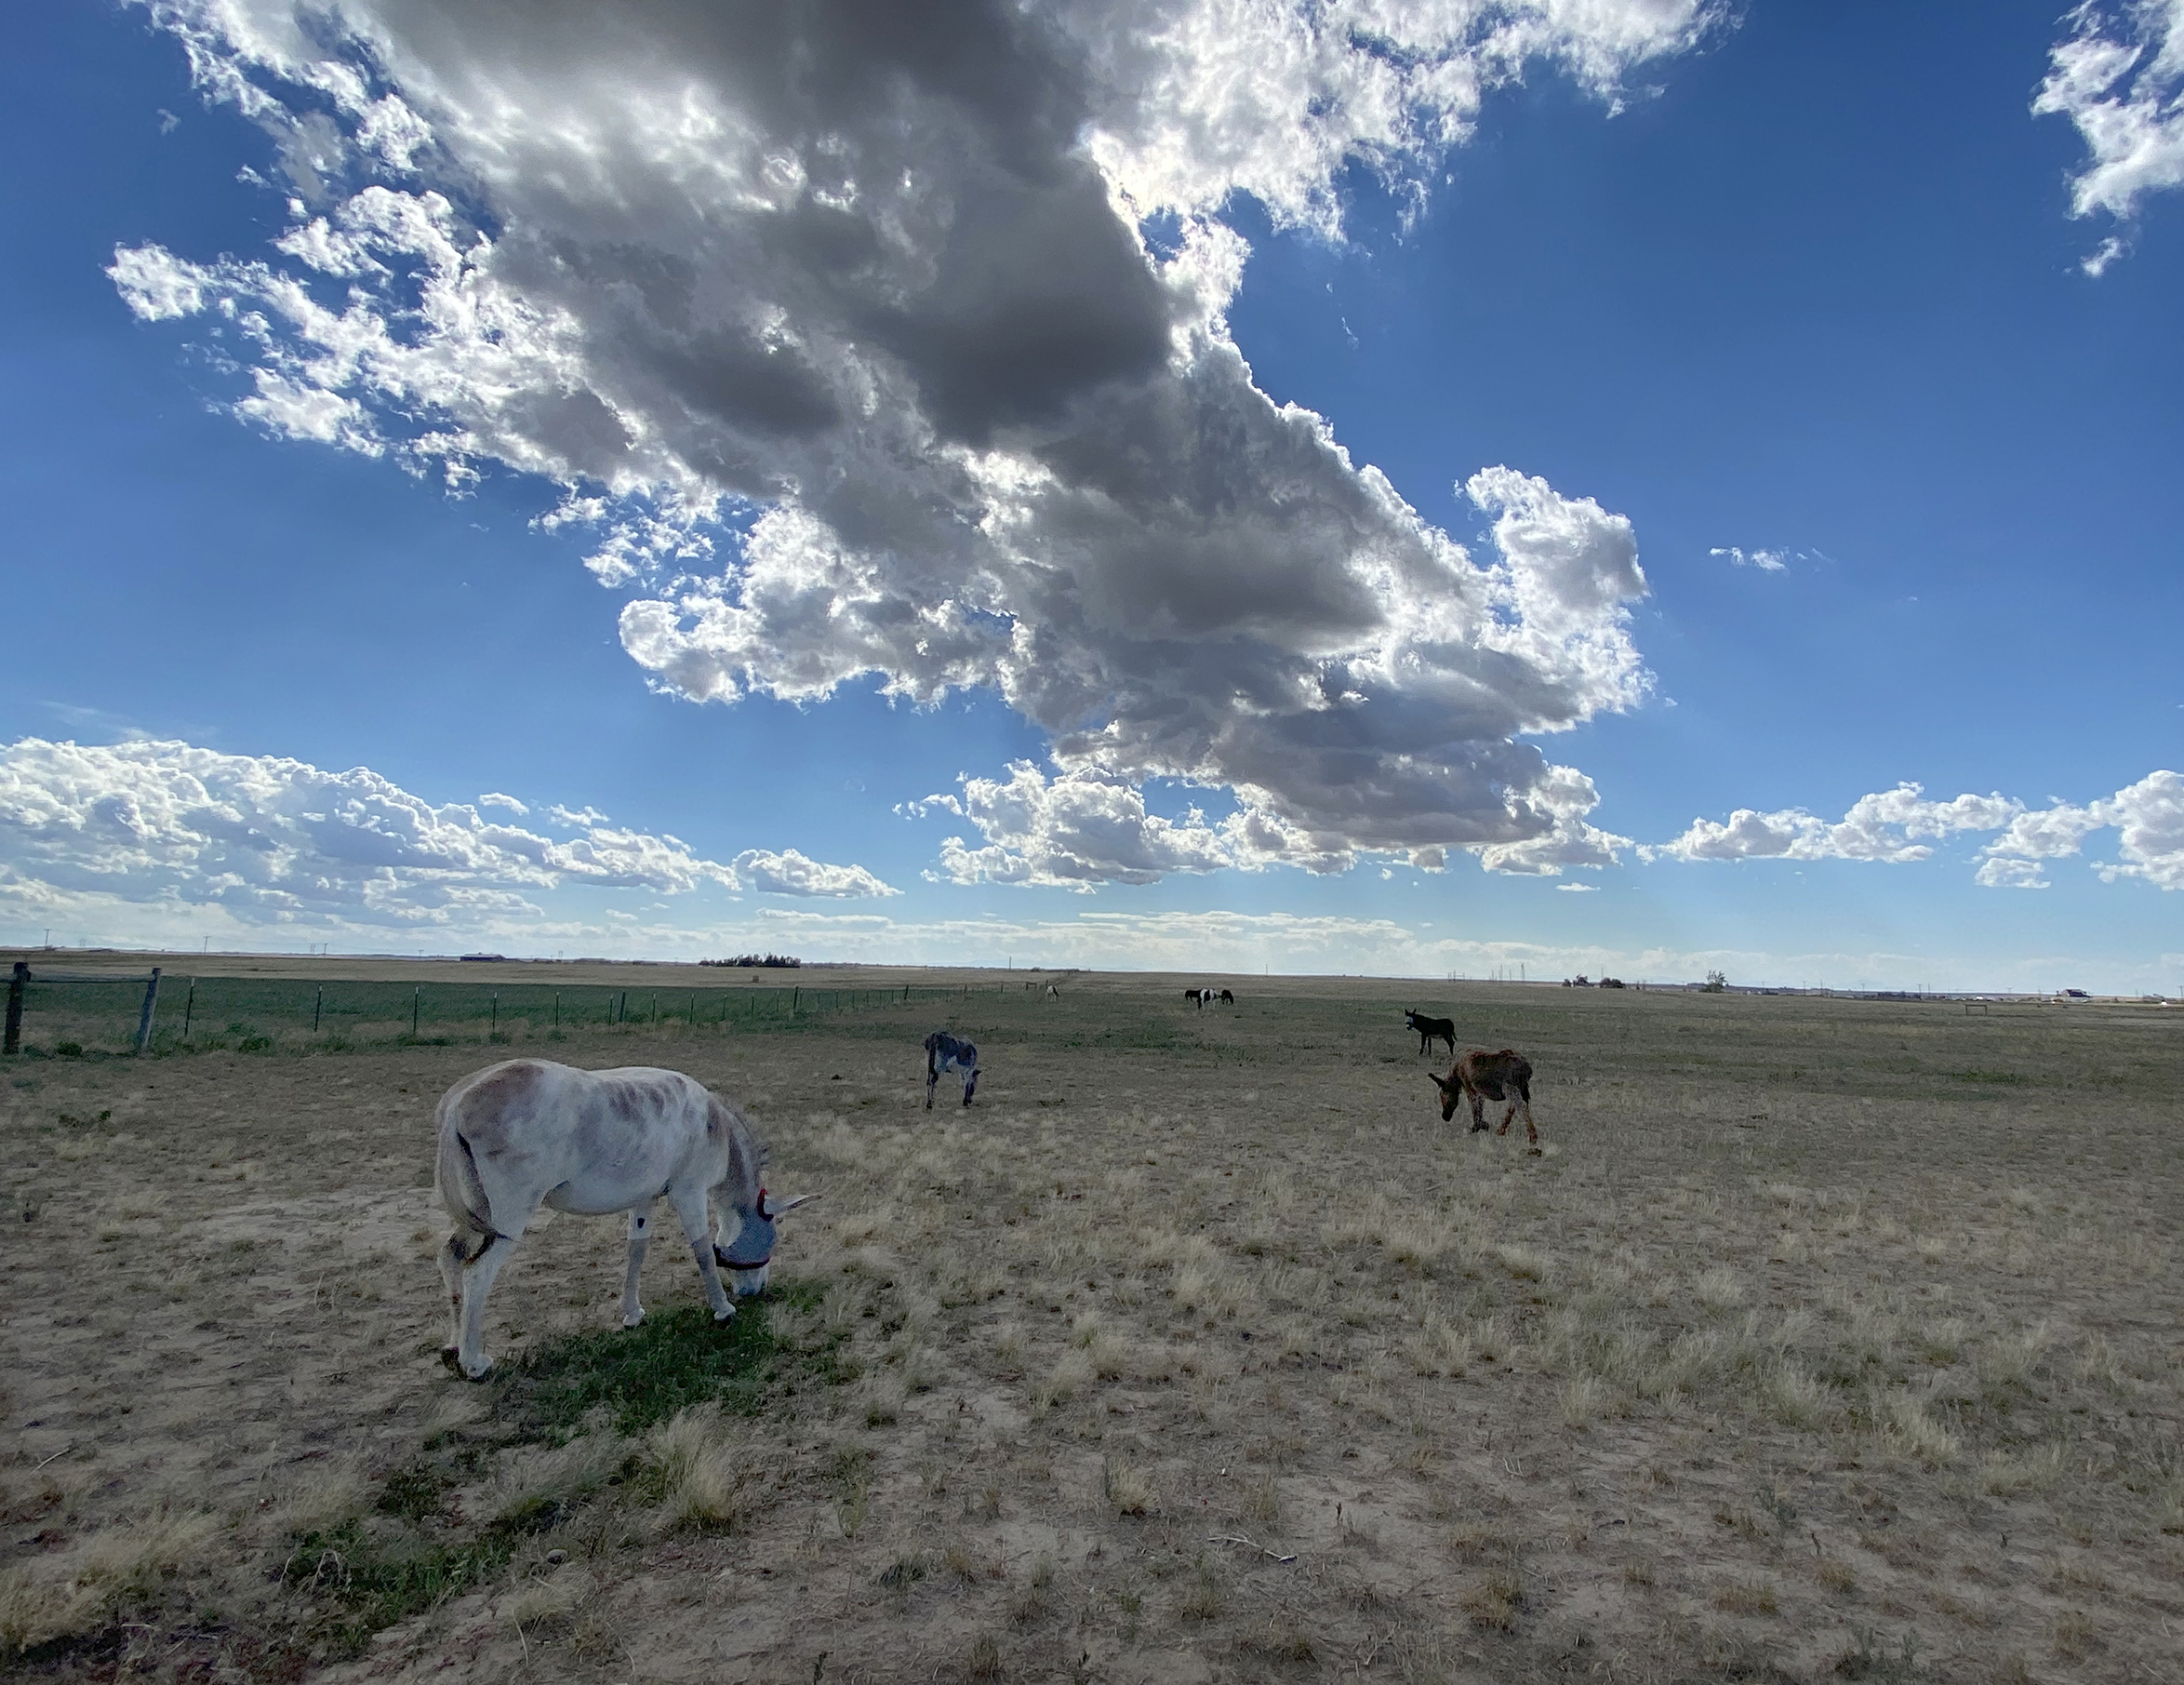 Four donkeys graze an open field on a cloudy Colorado day.